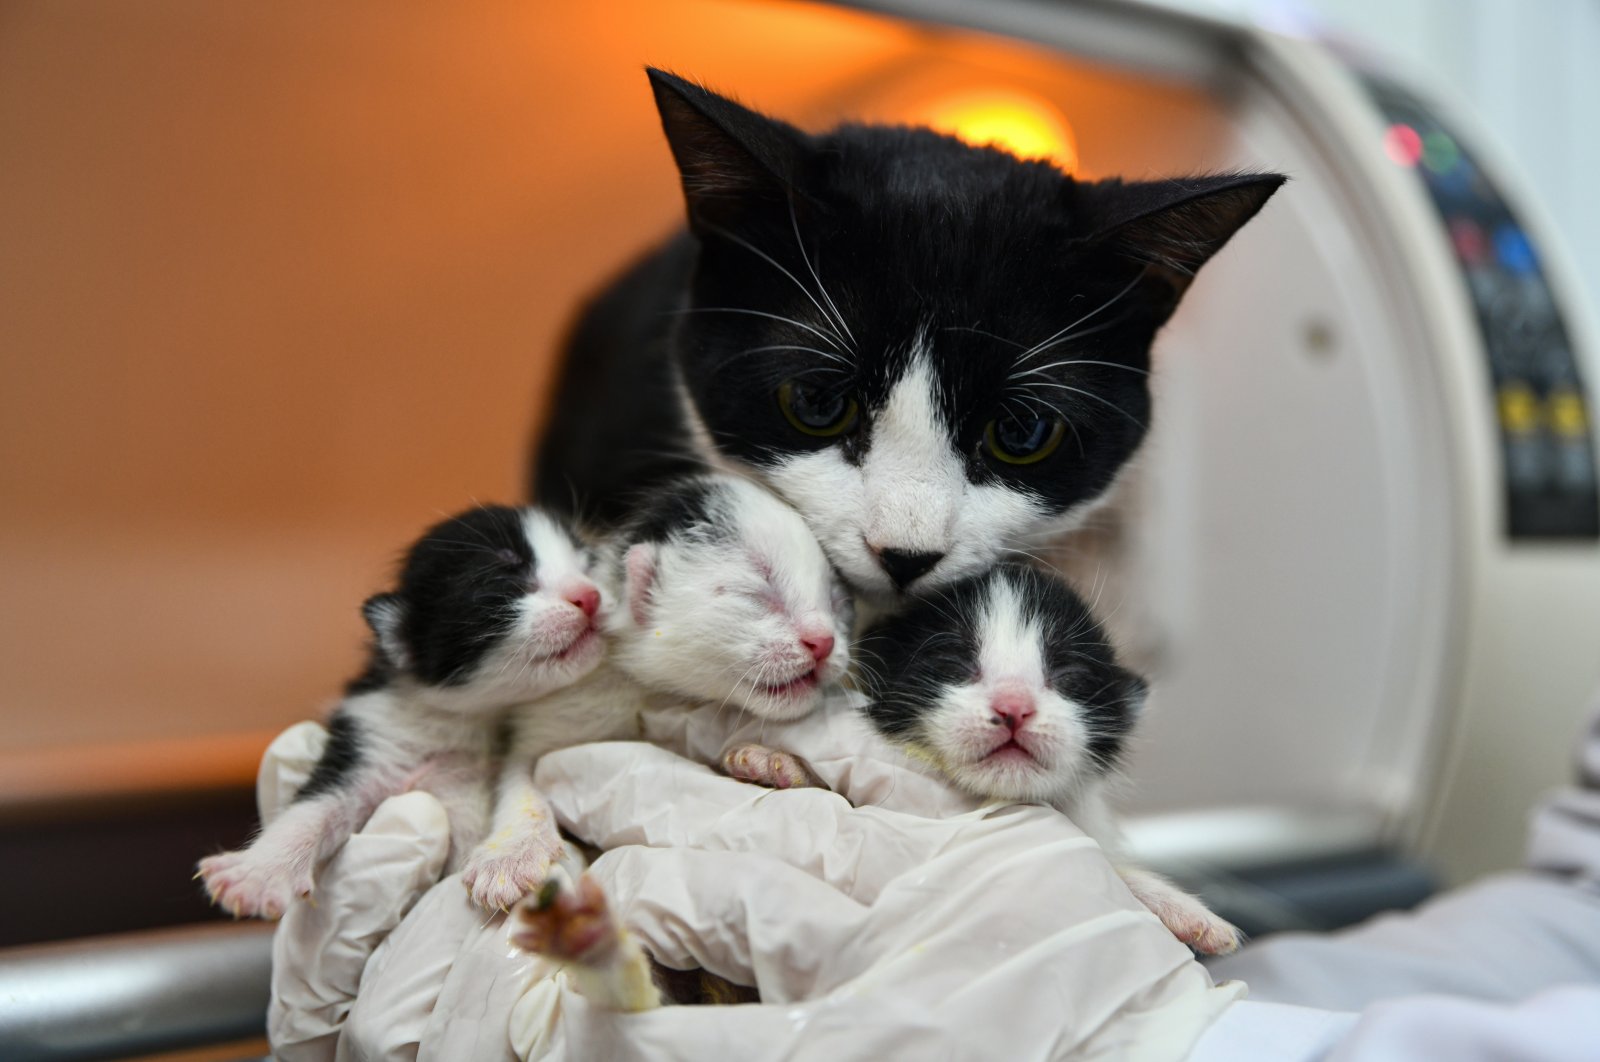 Veterinerët ribashkojnë macen e shpëtuar nga tërmeti në Turqi me kotelet e saj